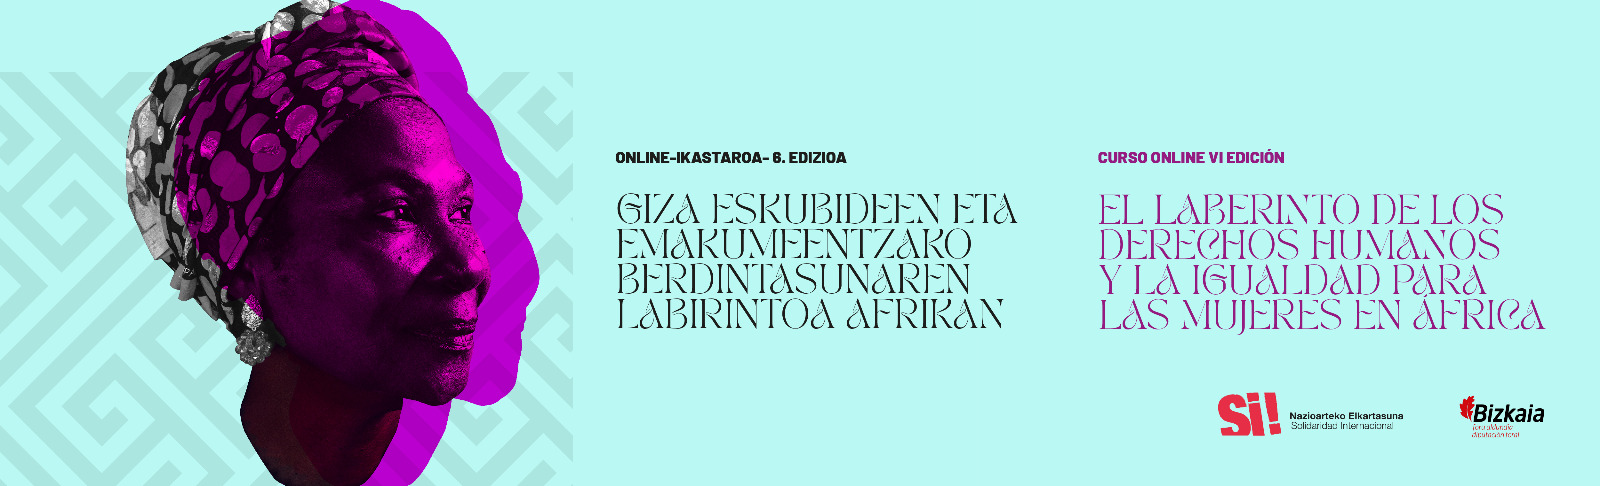 El laberinto de los Derechos Humanos y la igualdad para las mujeres en África – VI Edición